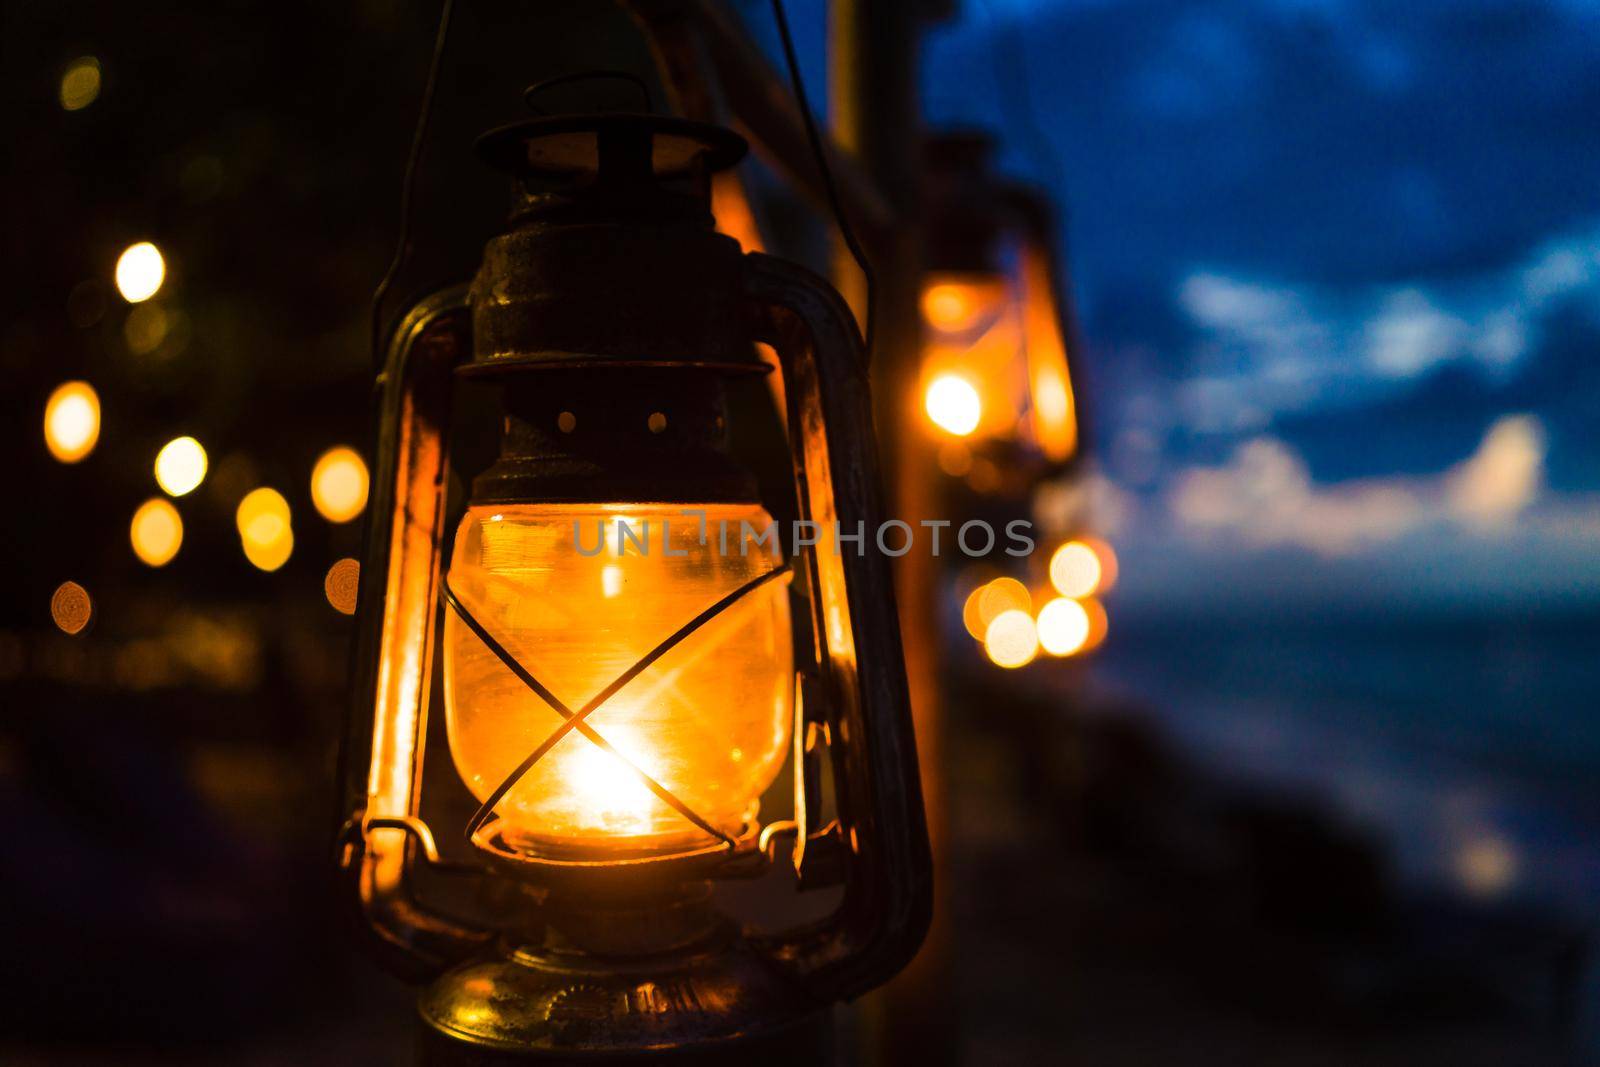 Sunset on an island beach with lanterns illuminating the romantic scene